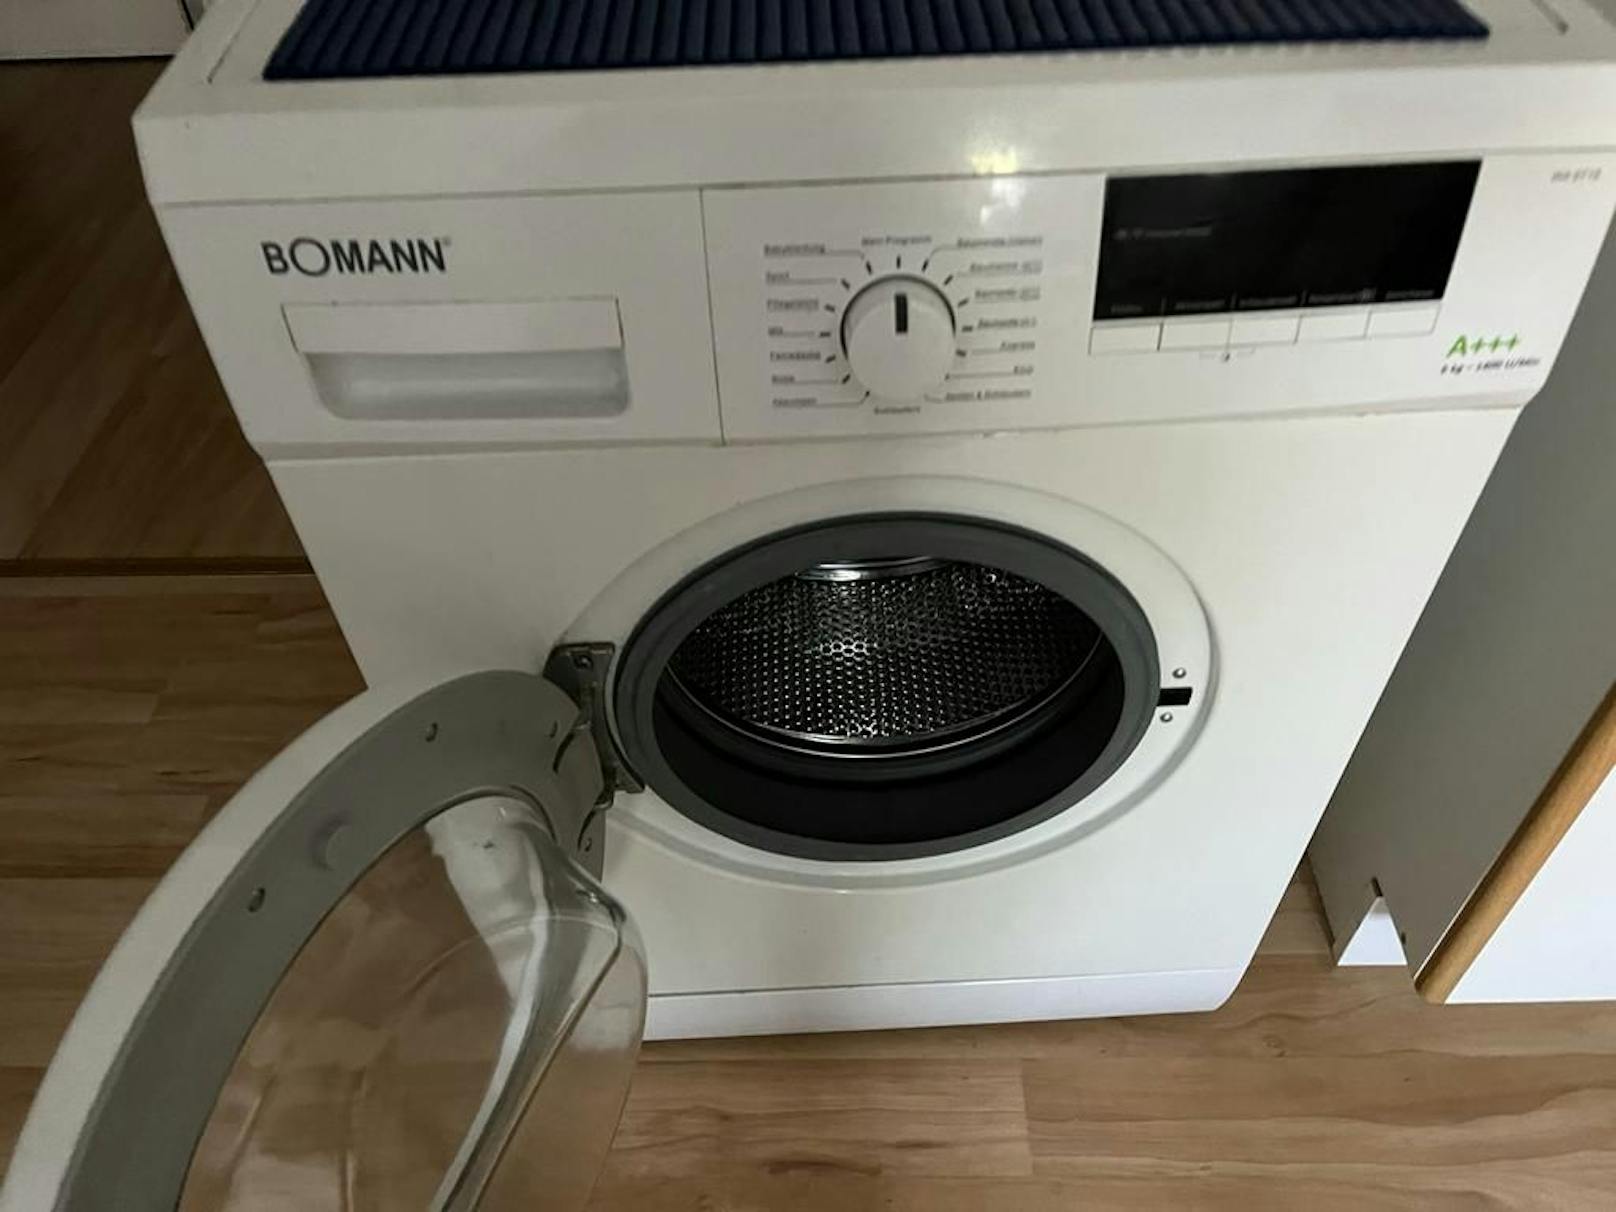 Die Waschmaschine, gekauft am 14.4. 2017 - pünktlich zum Garantieablauf Ende April 2022 die erste Fehlermeldung